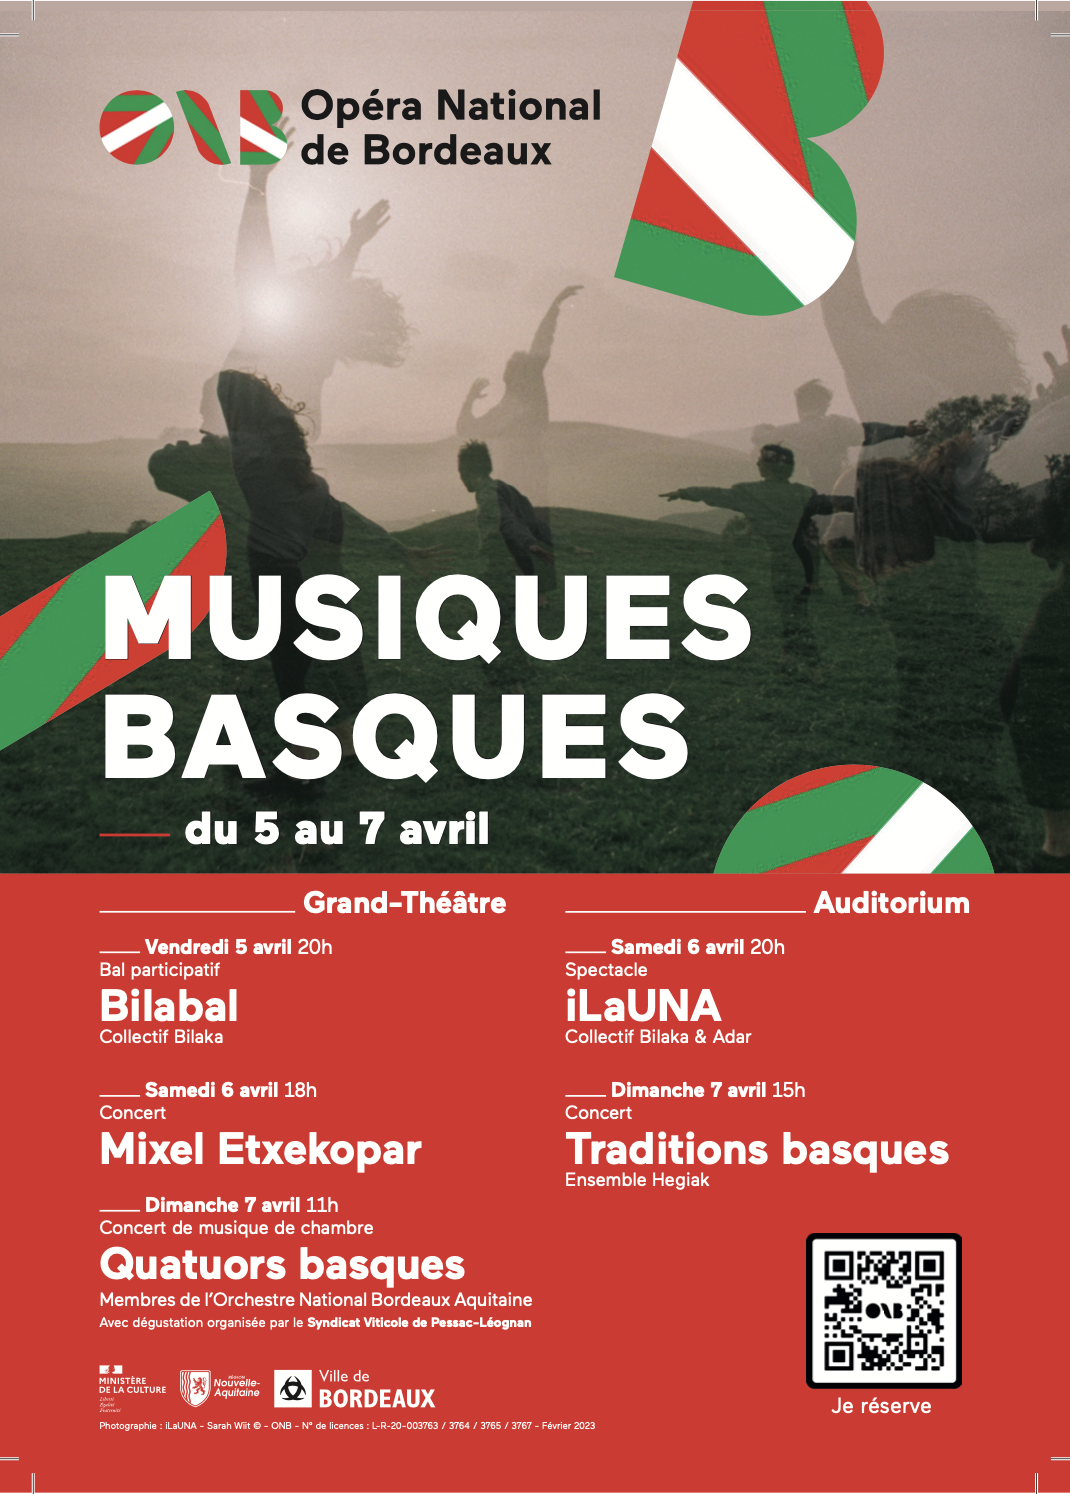 Temps fort des musiques basques à l'Opéra National de Bordeaux